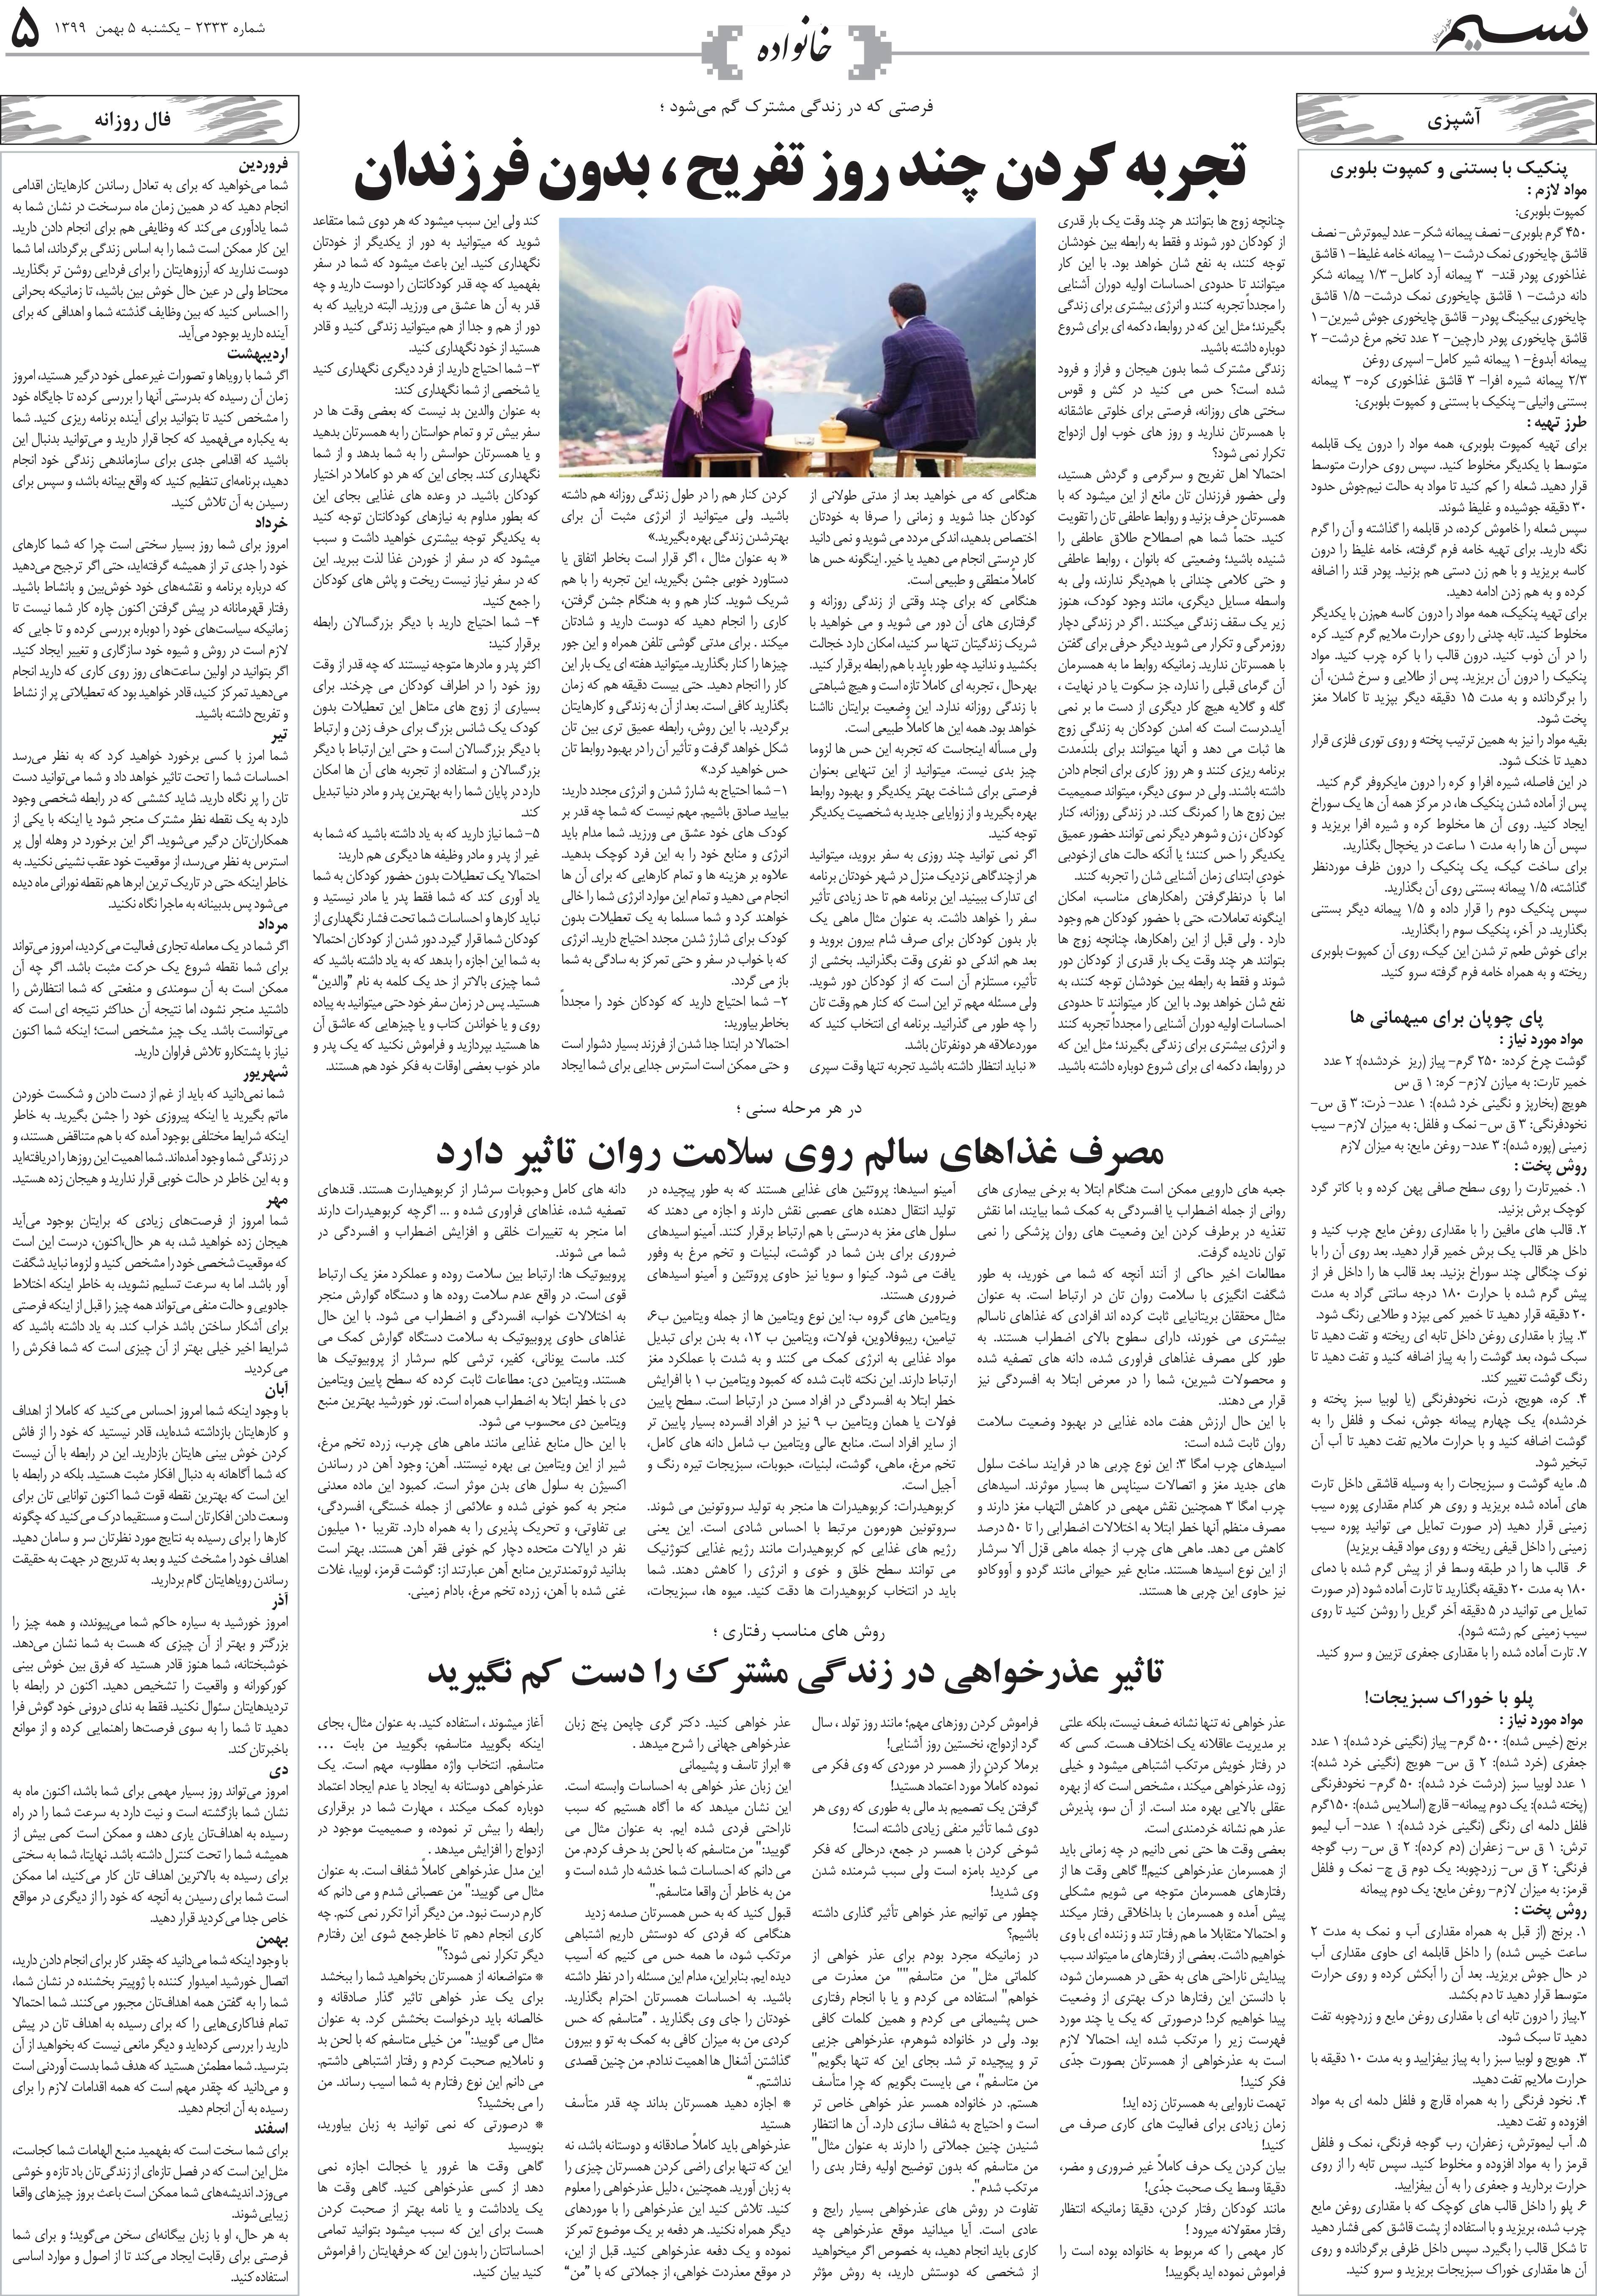 صفحه خانواده روزنامه نسیم شماره 2333